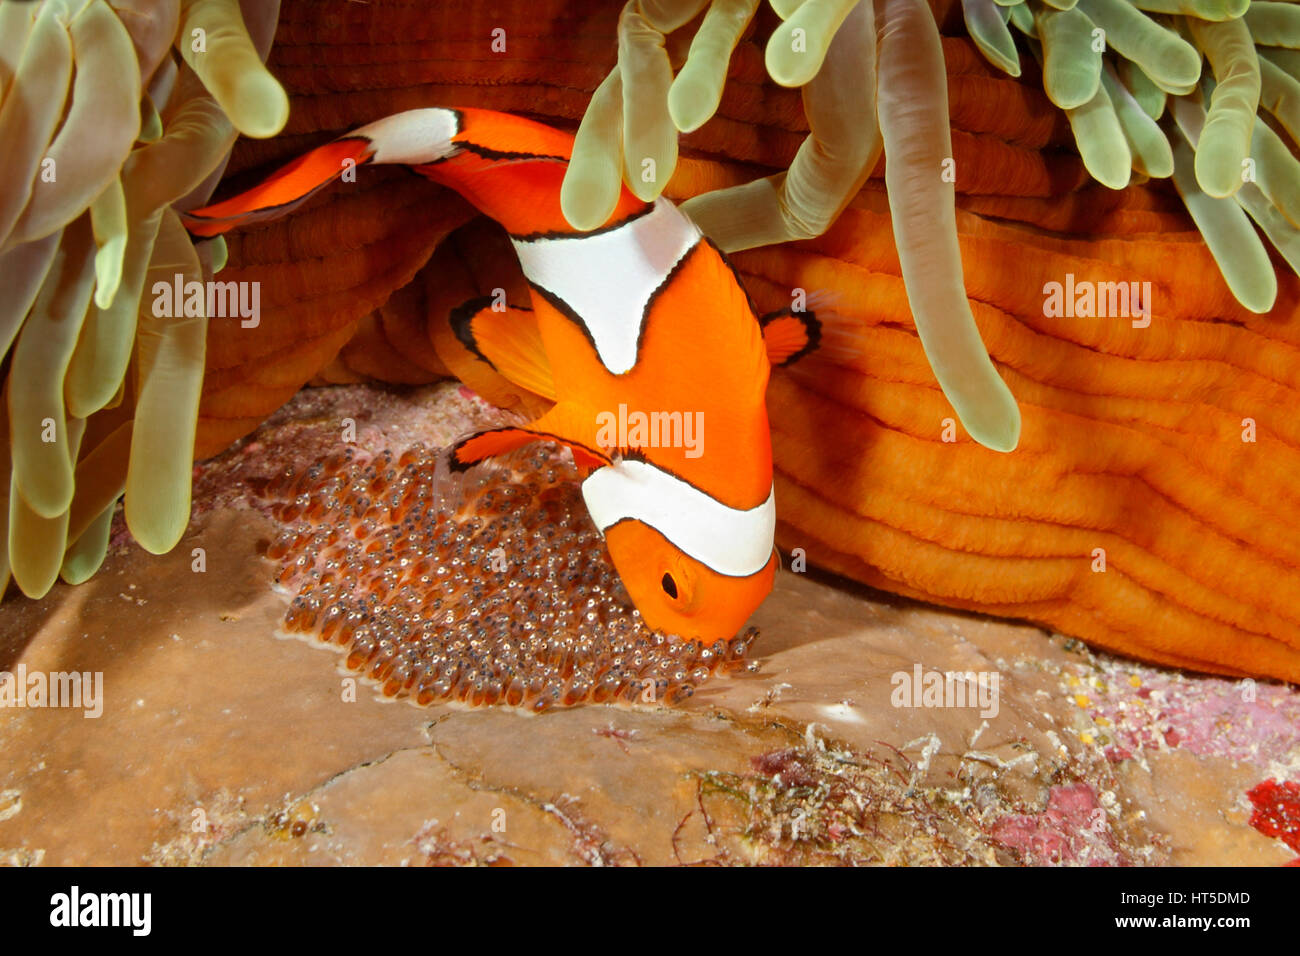 Payaso Anemonefish, Amphiprion percula, tendiendo los huevos en la base de la anémona Heteractis magnífica acogida, magnifica. Foto de stock